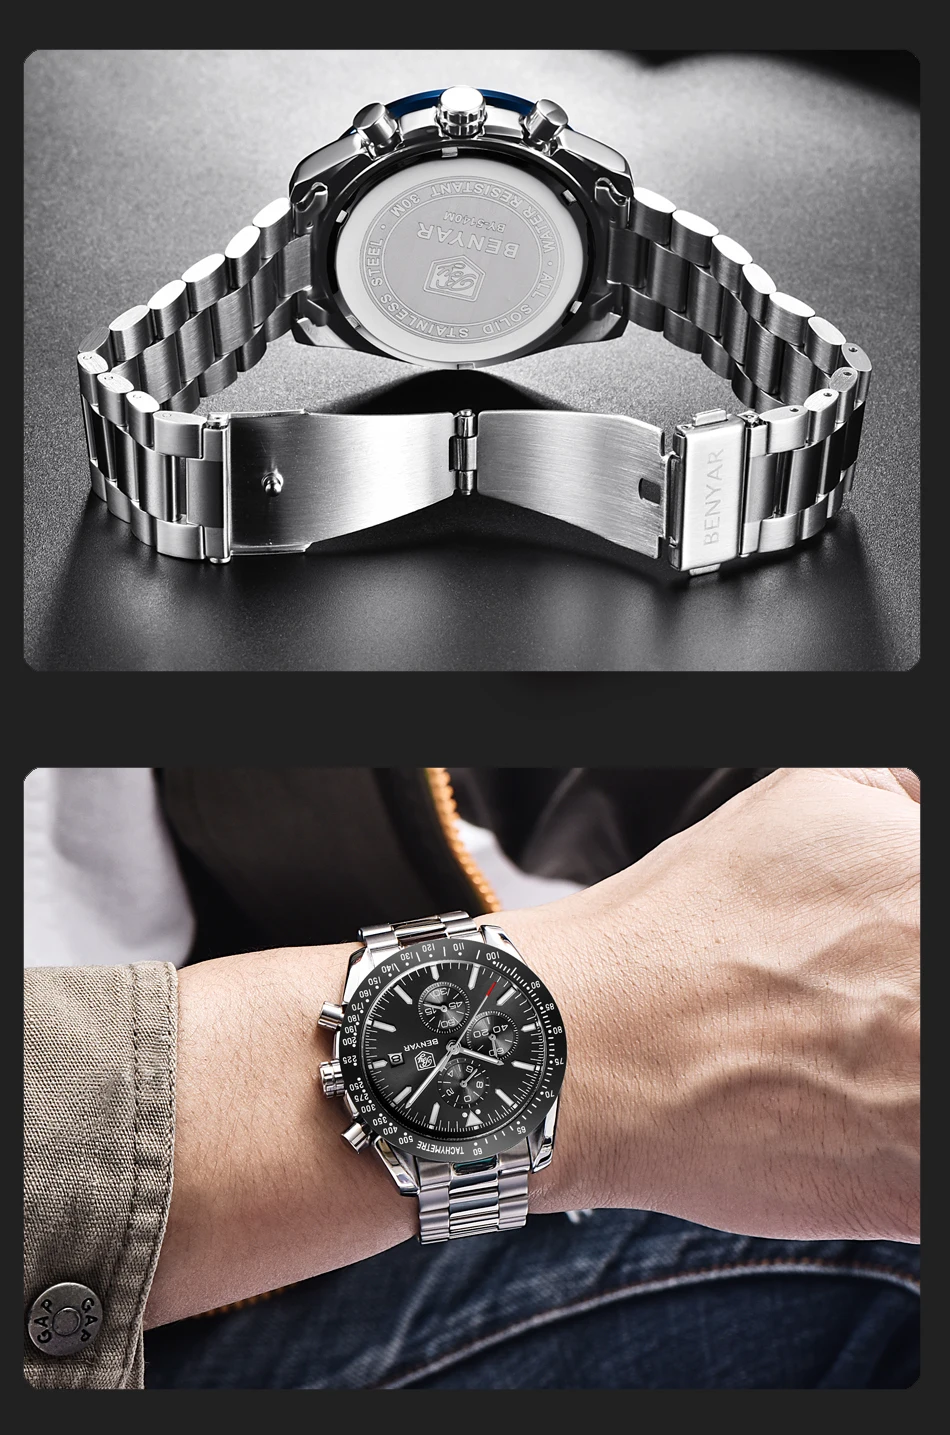 Часы мужские роскошные брендовые BENYAR мужские синие часы силиконовый ремешок наручные часы Мужские часы с хронографом мужские часы Relogio Masculino